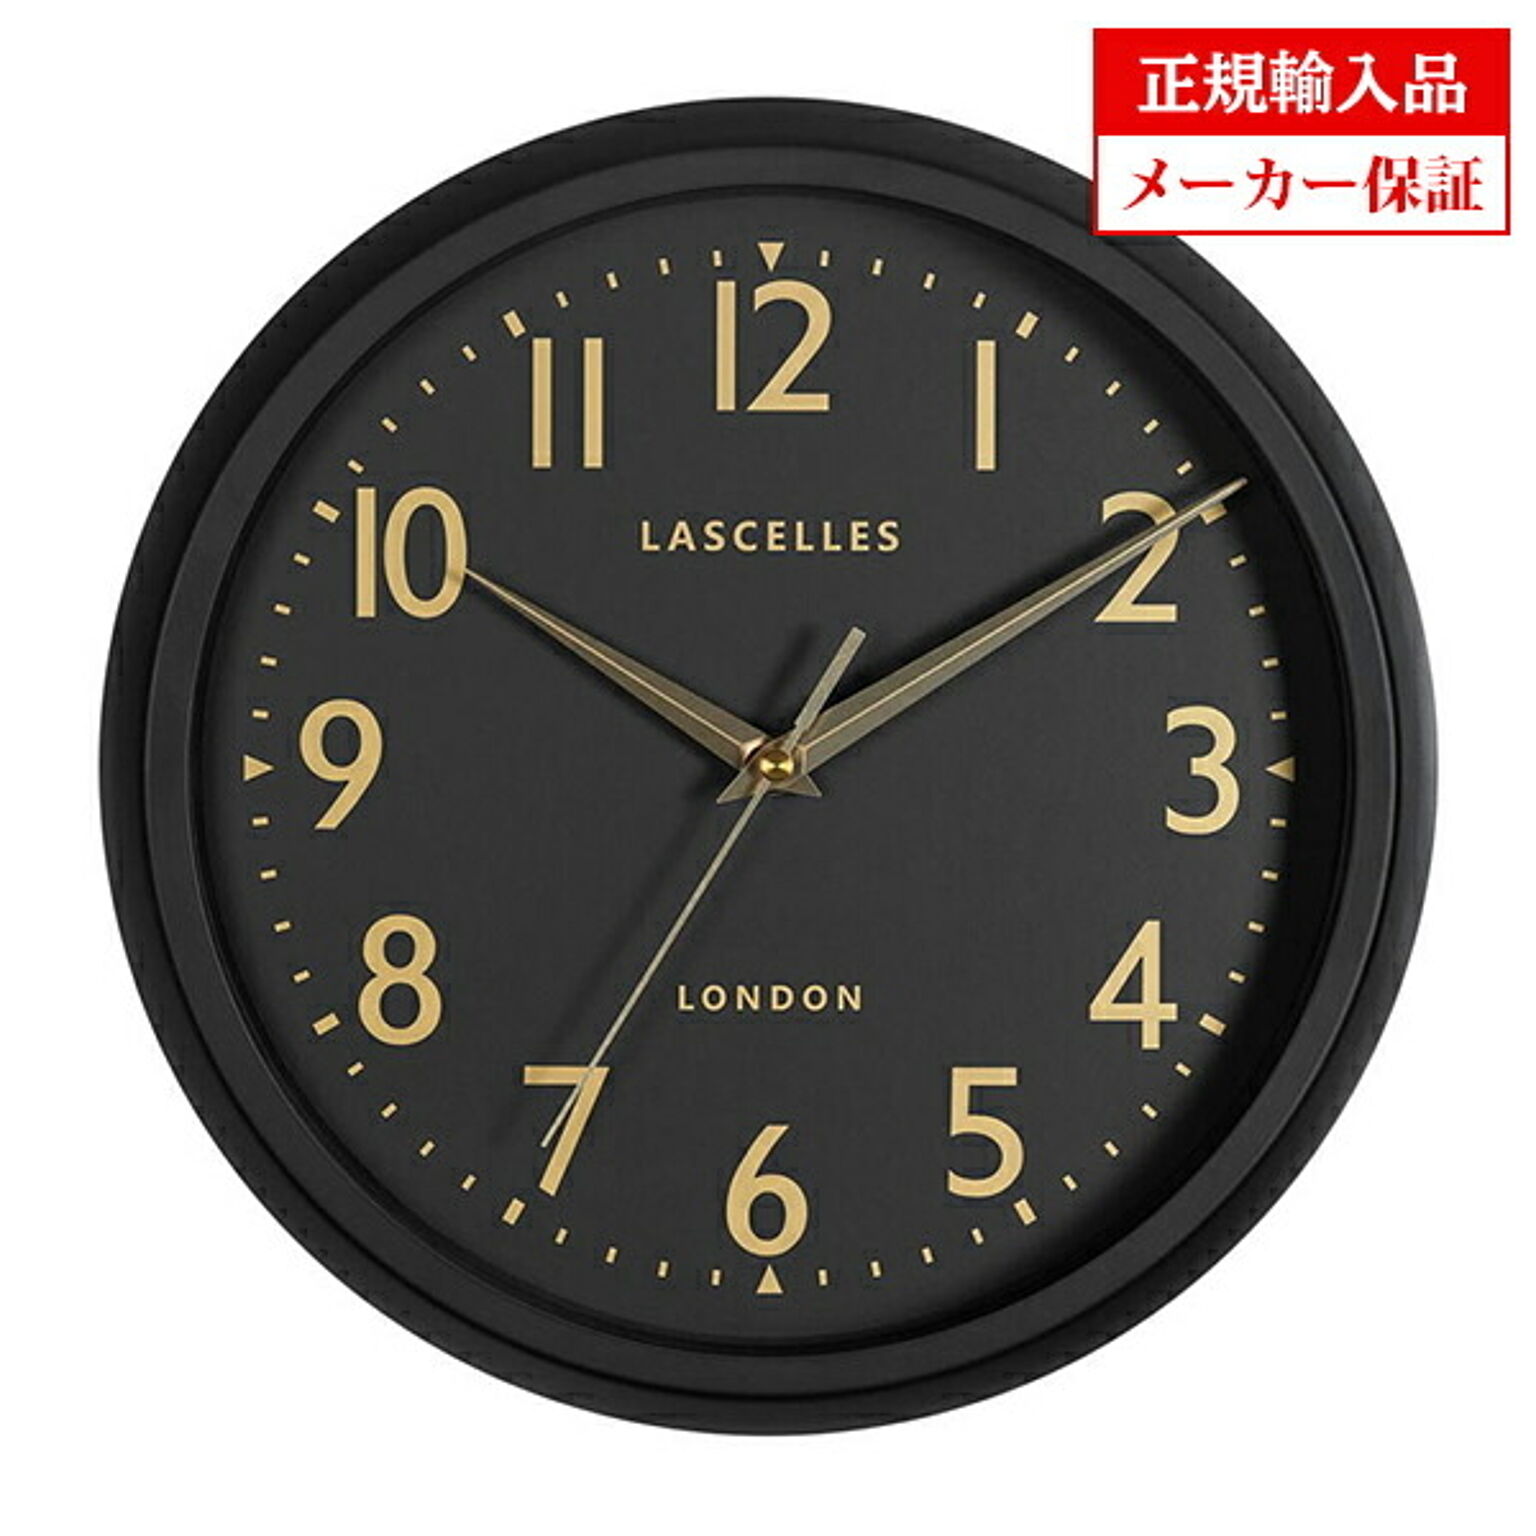 【正規輸入品】 イギリス ロジャーラッセル DECO／LASC／BLACK 掛け時計 Roger Lascelles Retro clocks レトロクロック